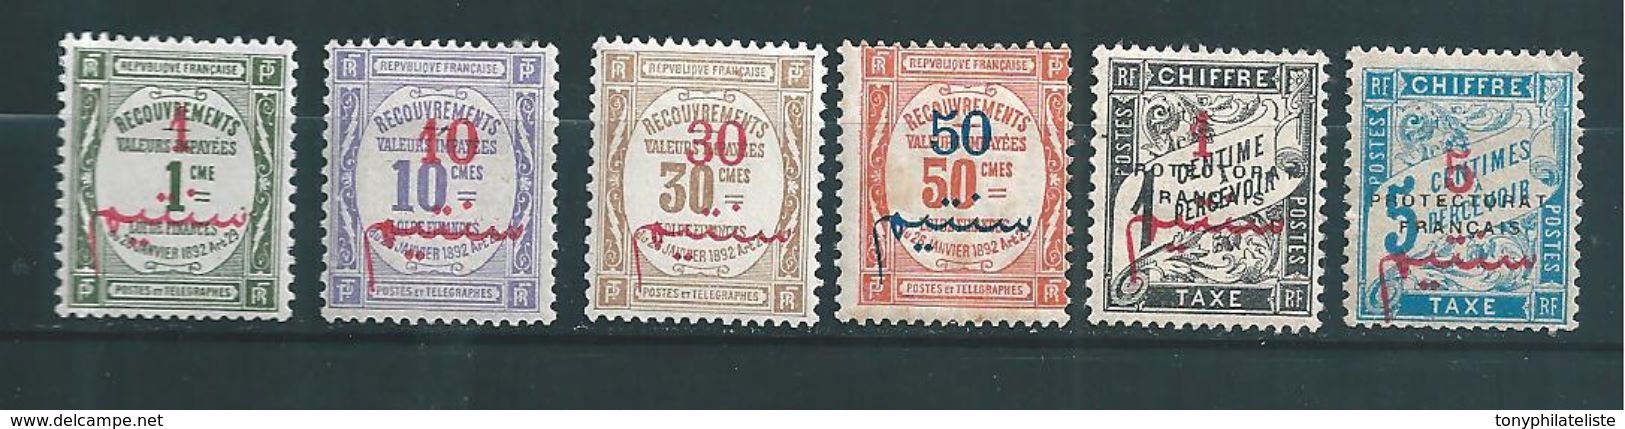 Colonie Francaise  Timbre Du Maroc Timbre Taxe  De 1911/15  N°13 A 18  Neuf * Cote 91,50&euro; - Timbres-taxe